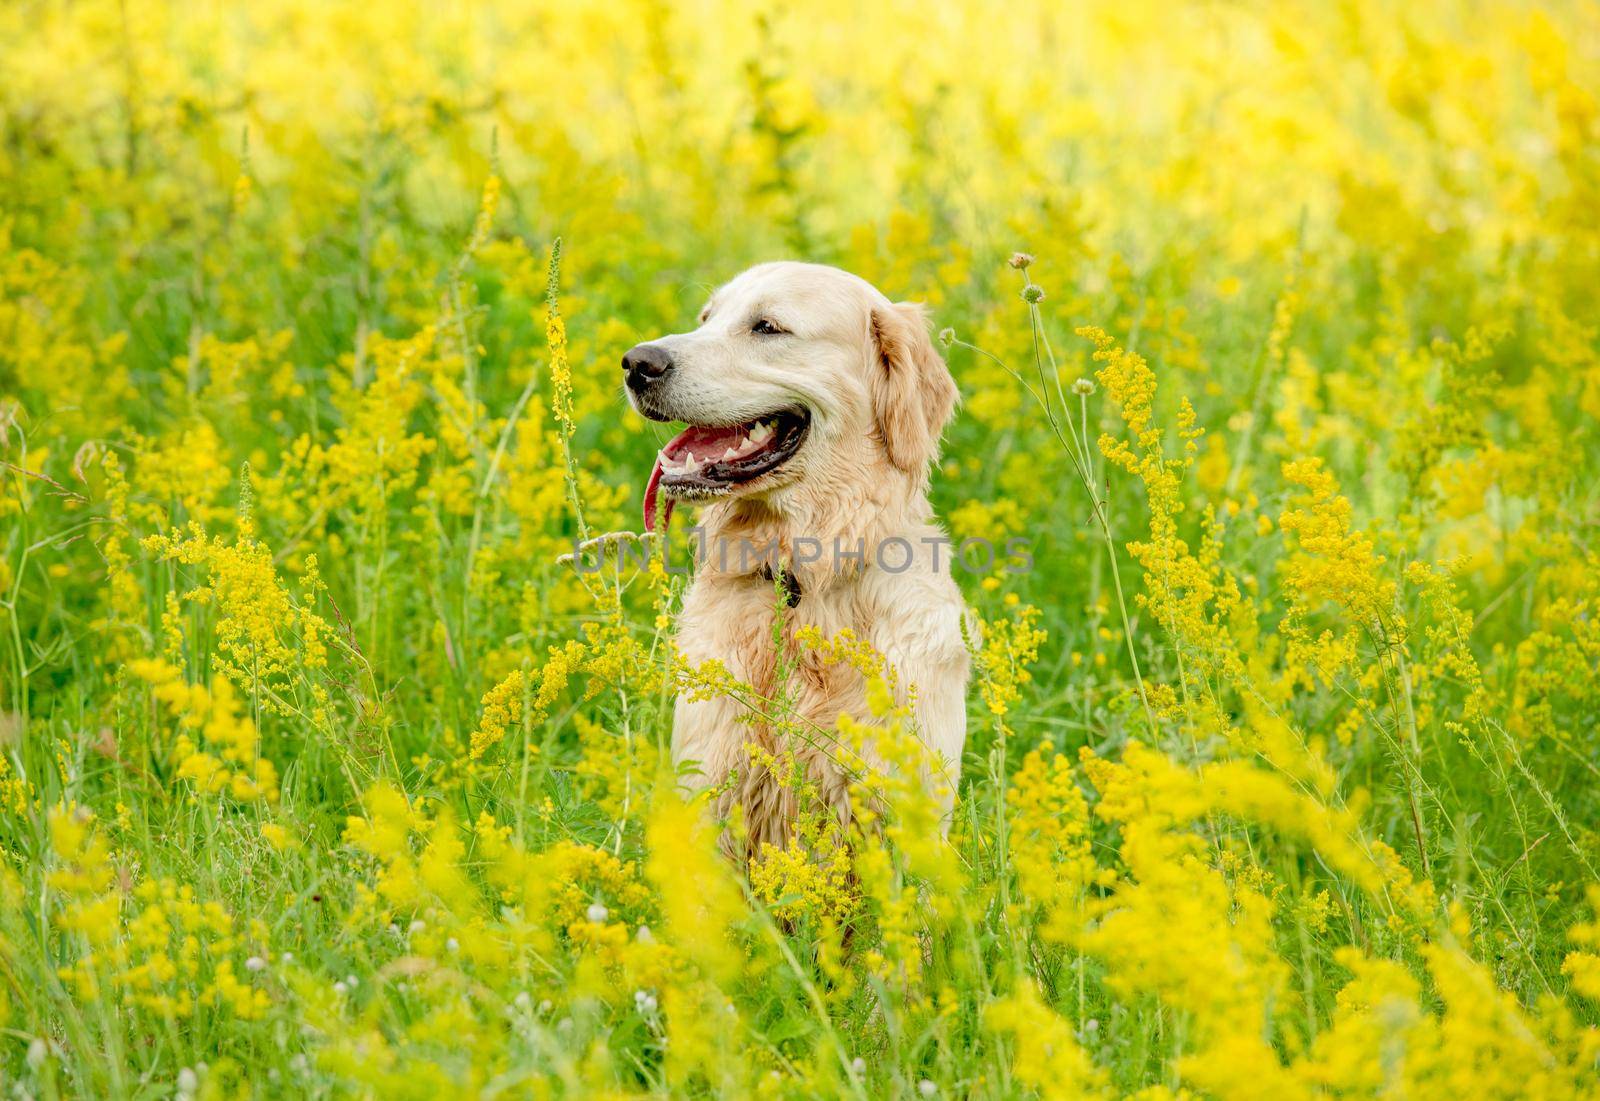 Funny golden retriever on flowering field by tan4ikk1